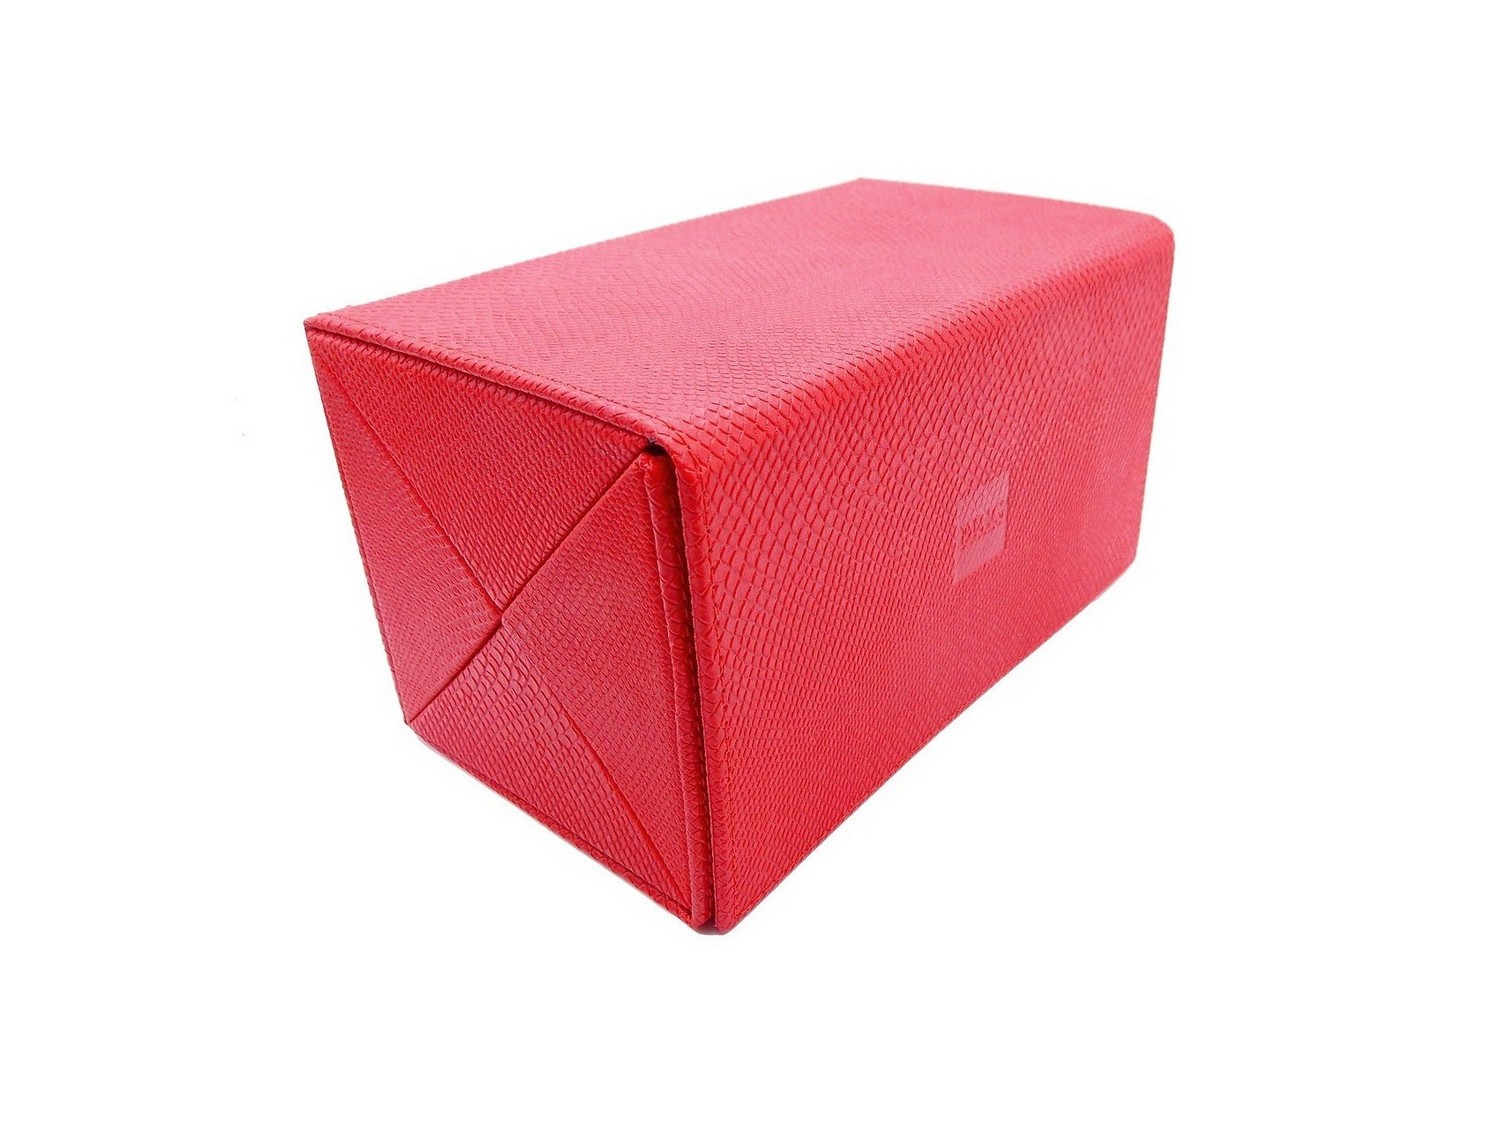 Мультифутляр BOX 4.90.20.10 мульти-футляр красный